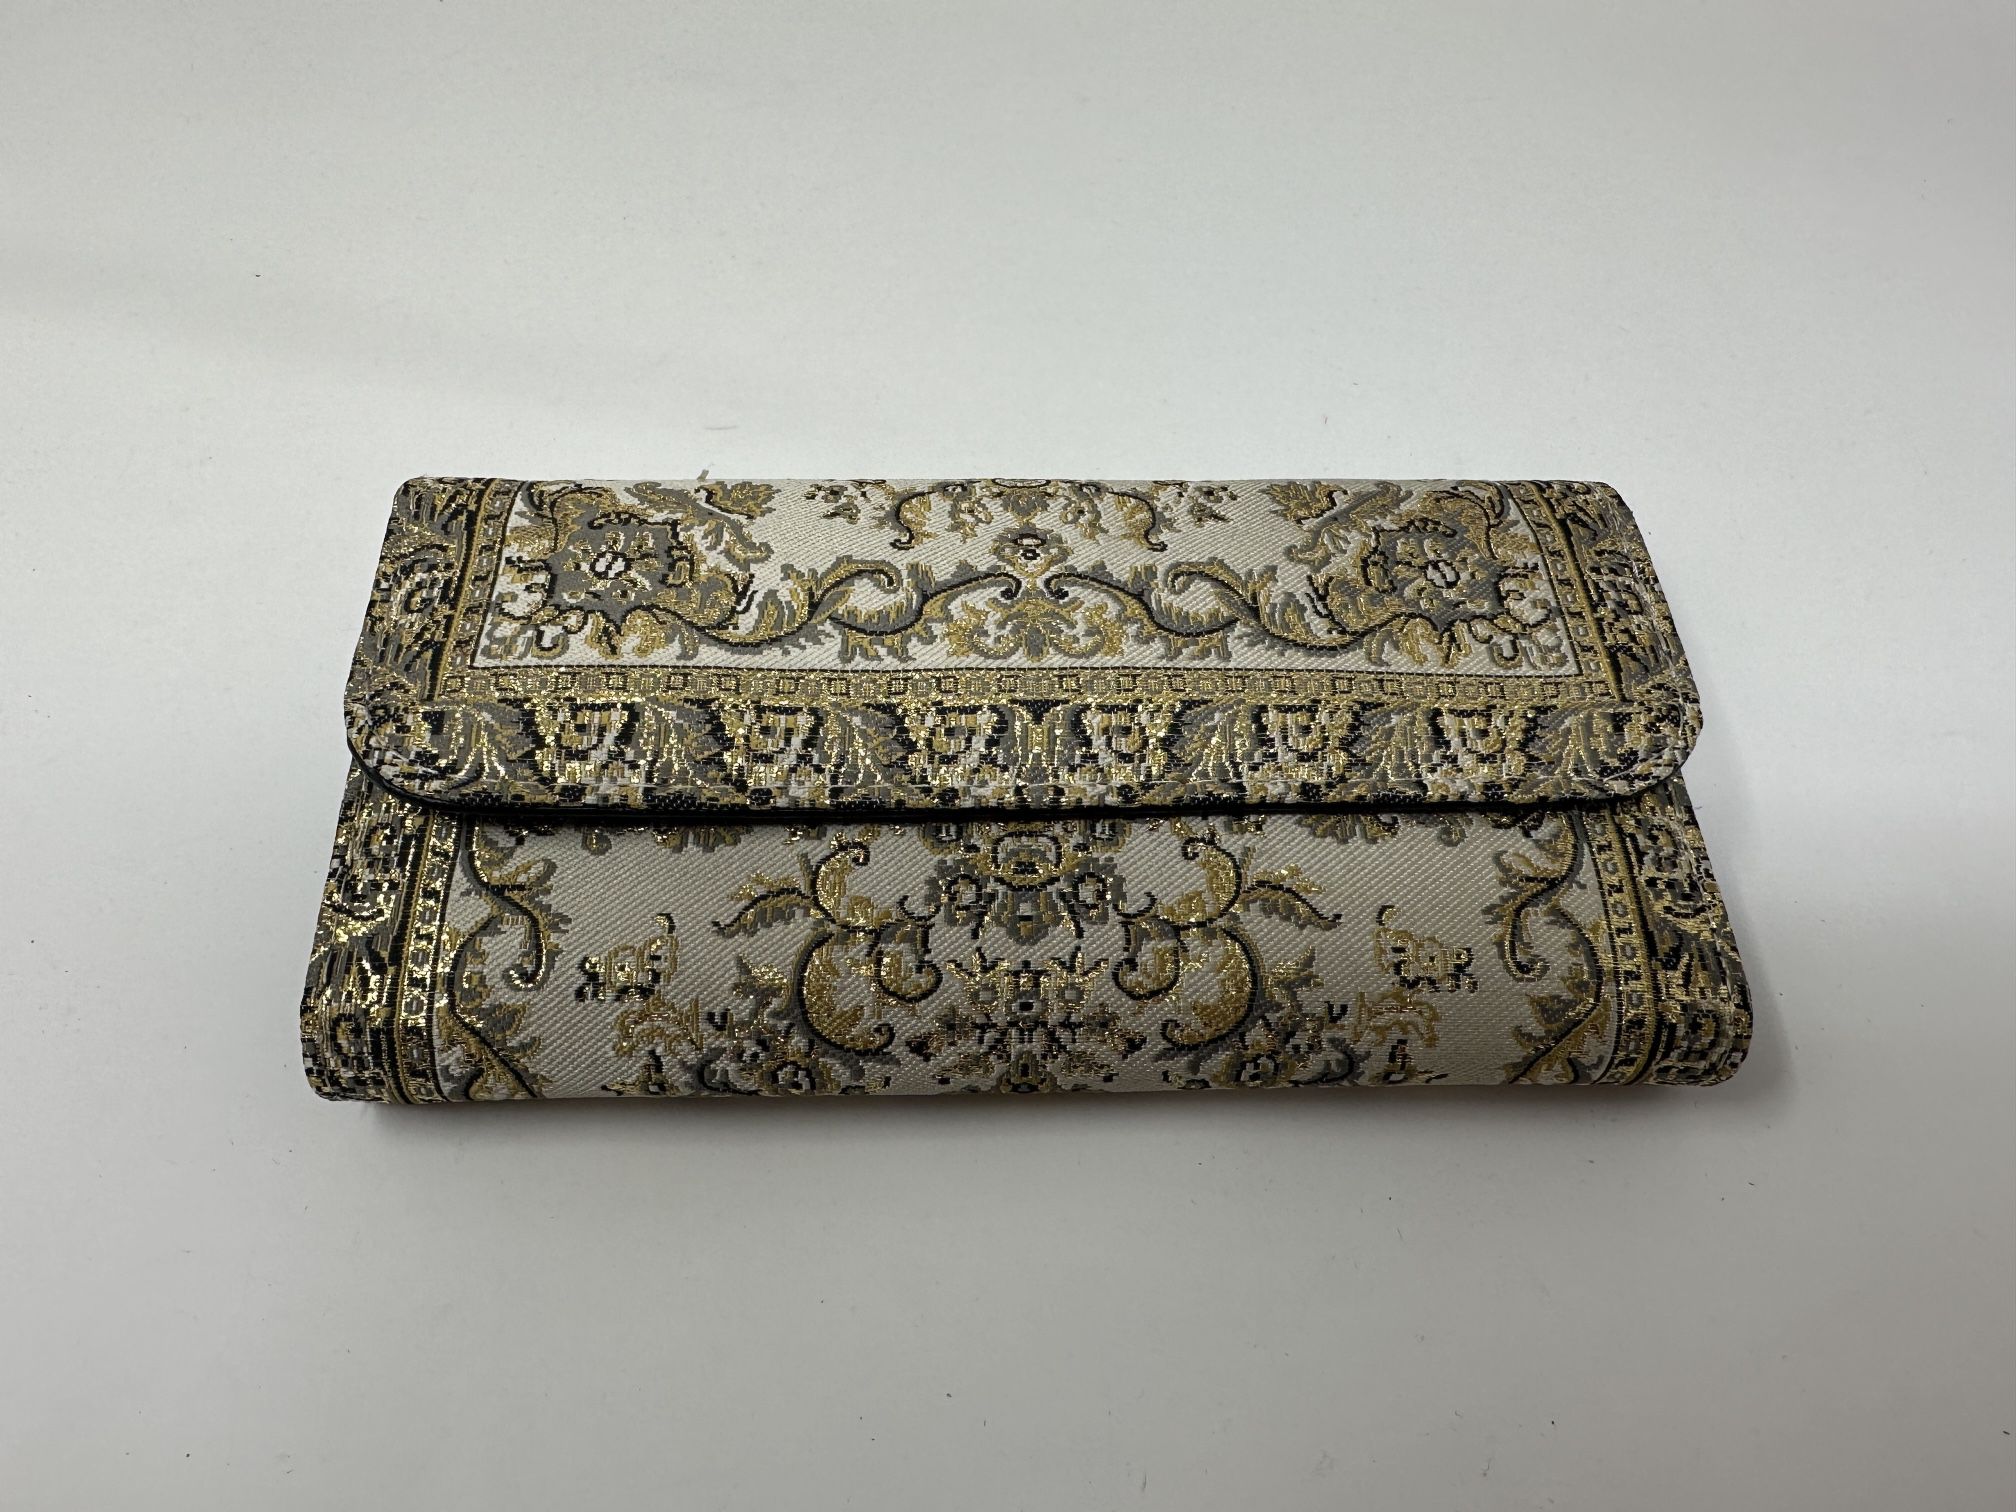 Traditional Rug Design Folded Wallet